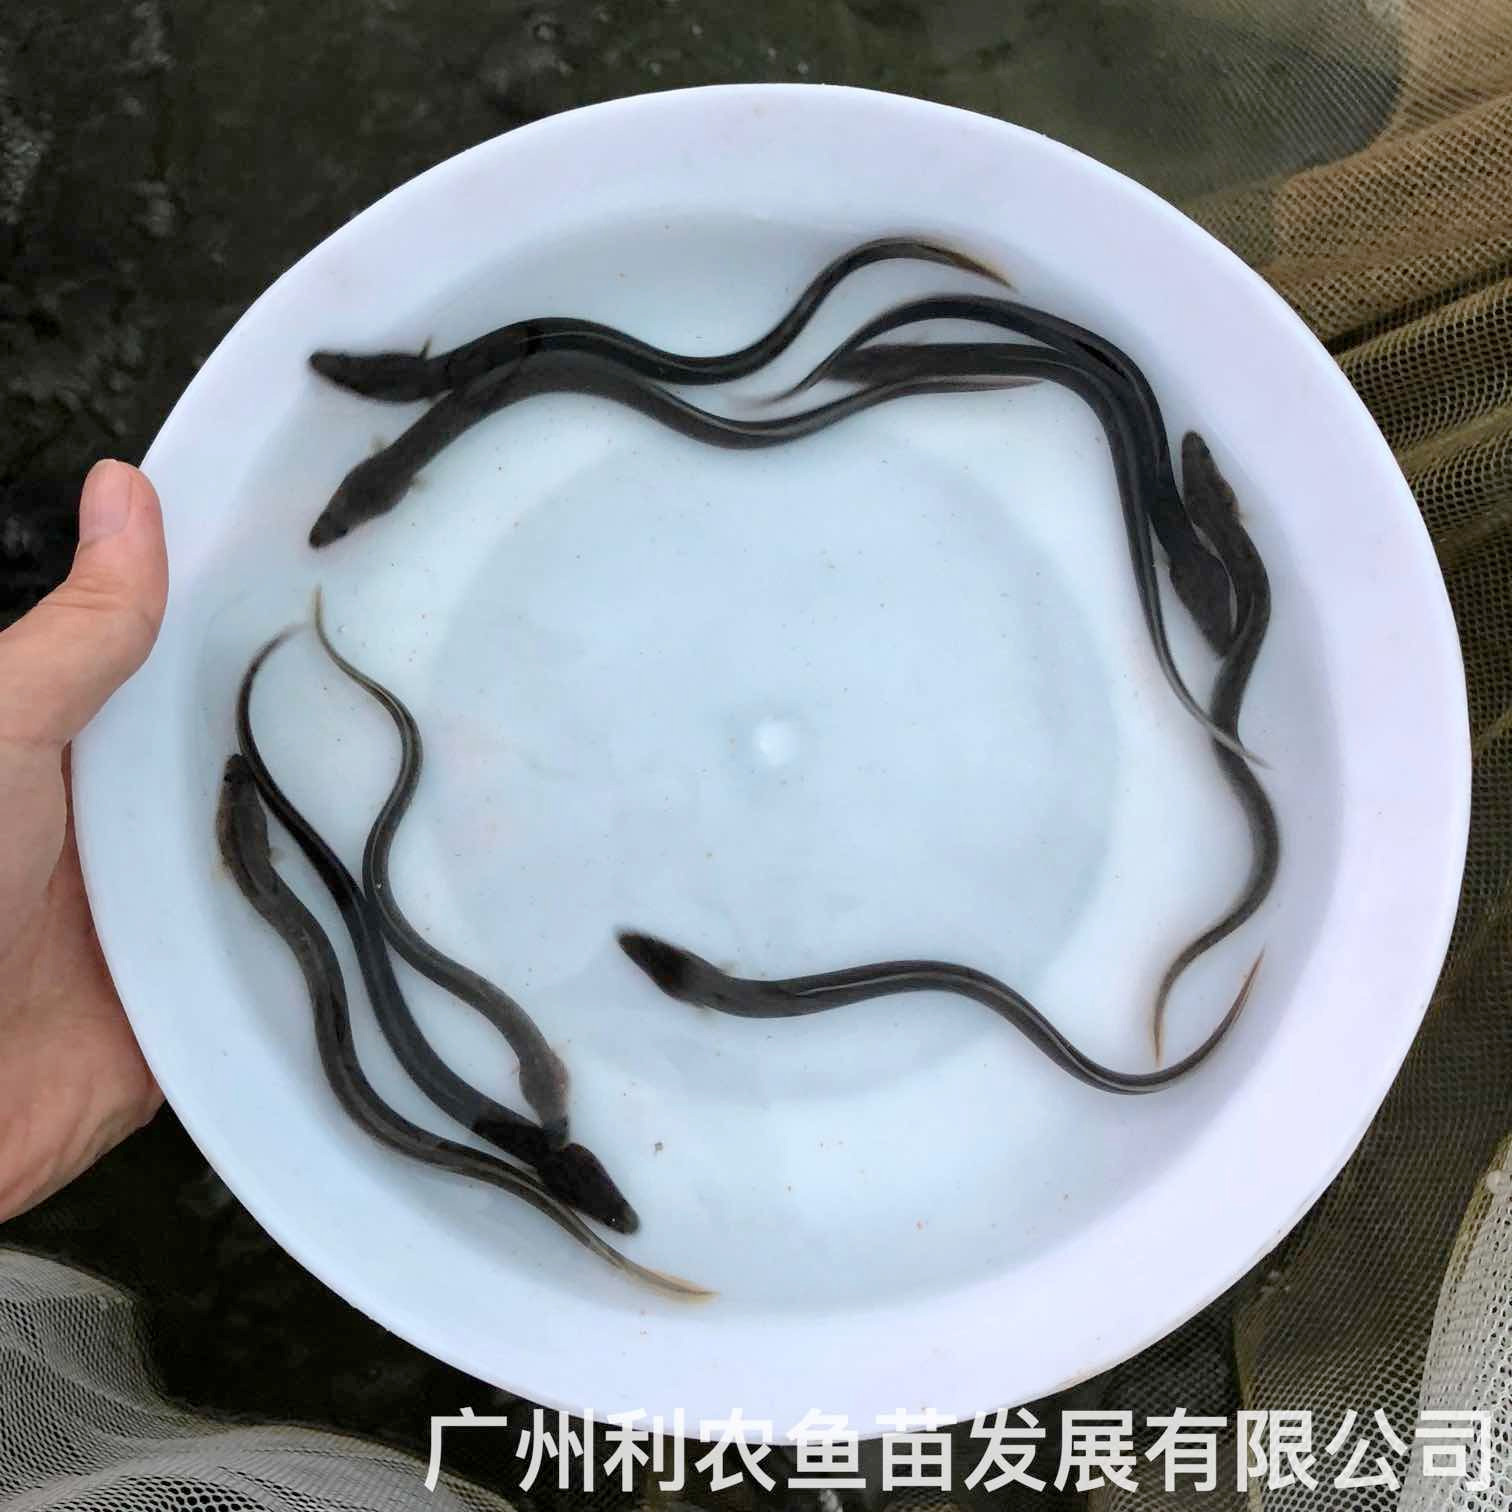 广西富川淡水花鳗鱼苗出售广西博白鳗鱼苗批发价格